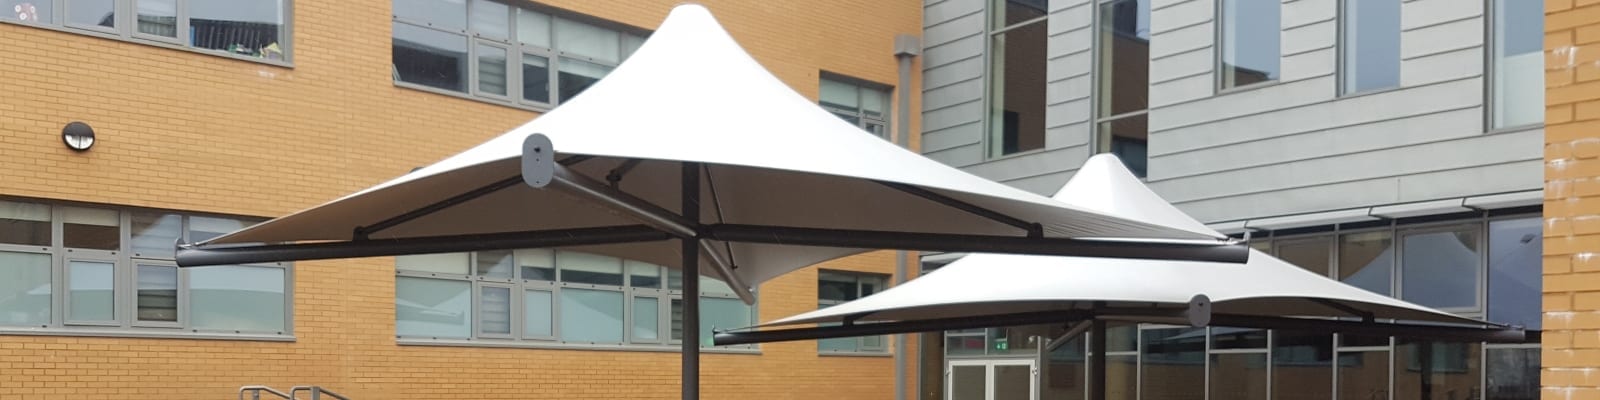 Ebbw Fawr Learning Community Umbrella Canopies